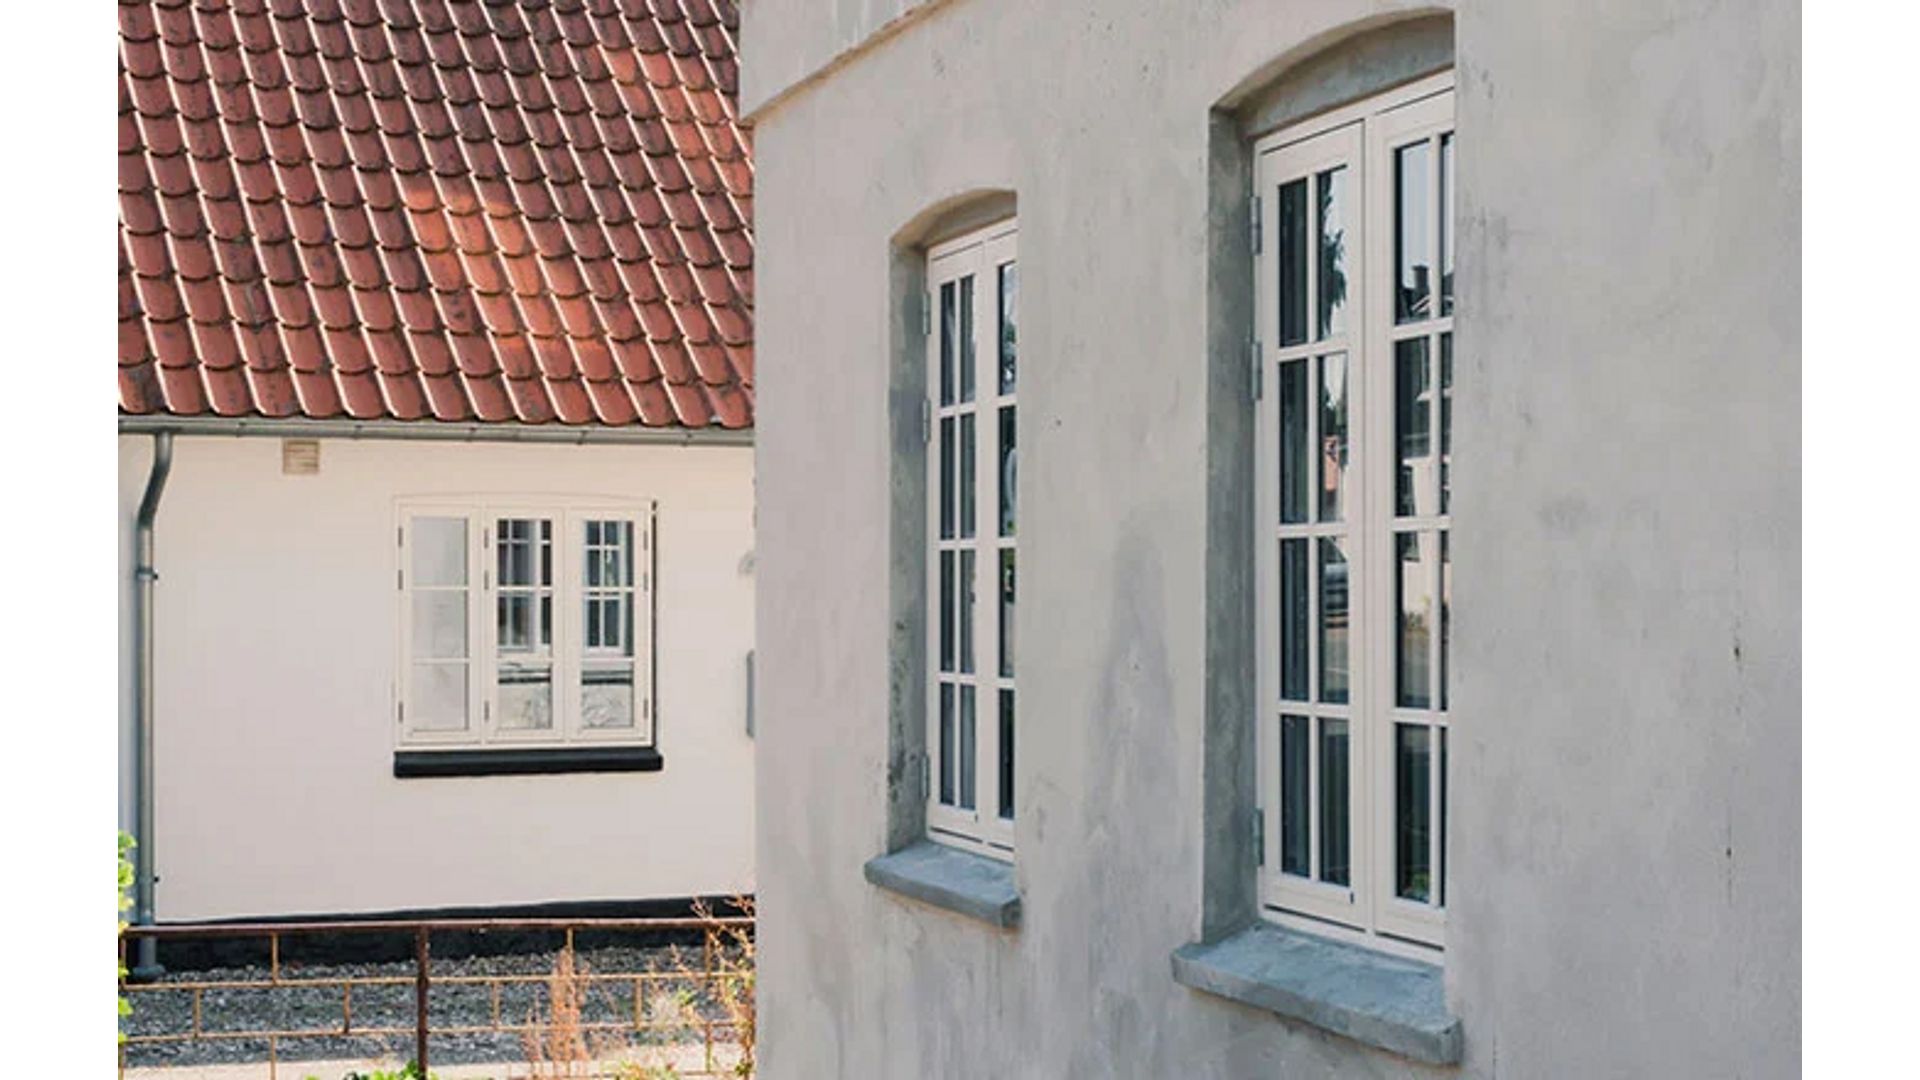 Kahe- vs kolmekordsed aknad image